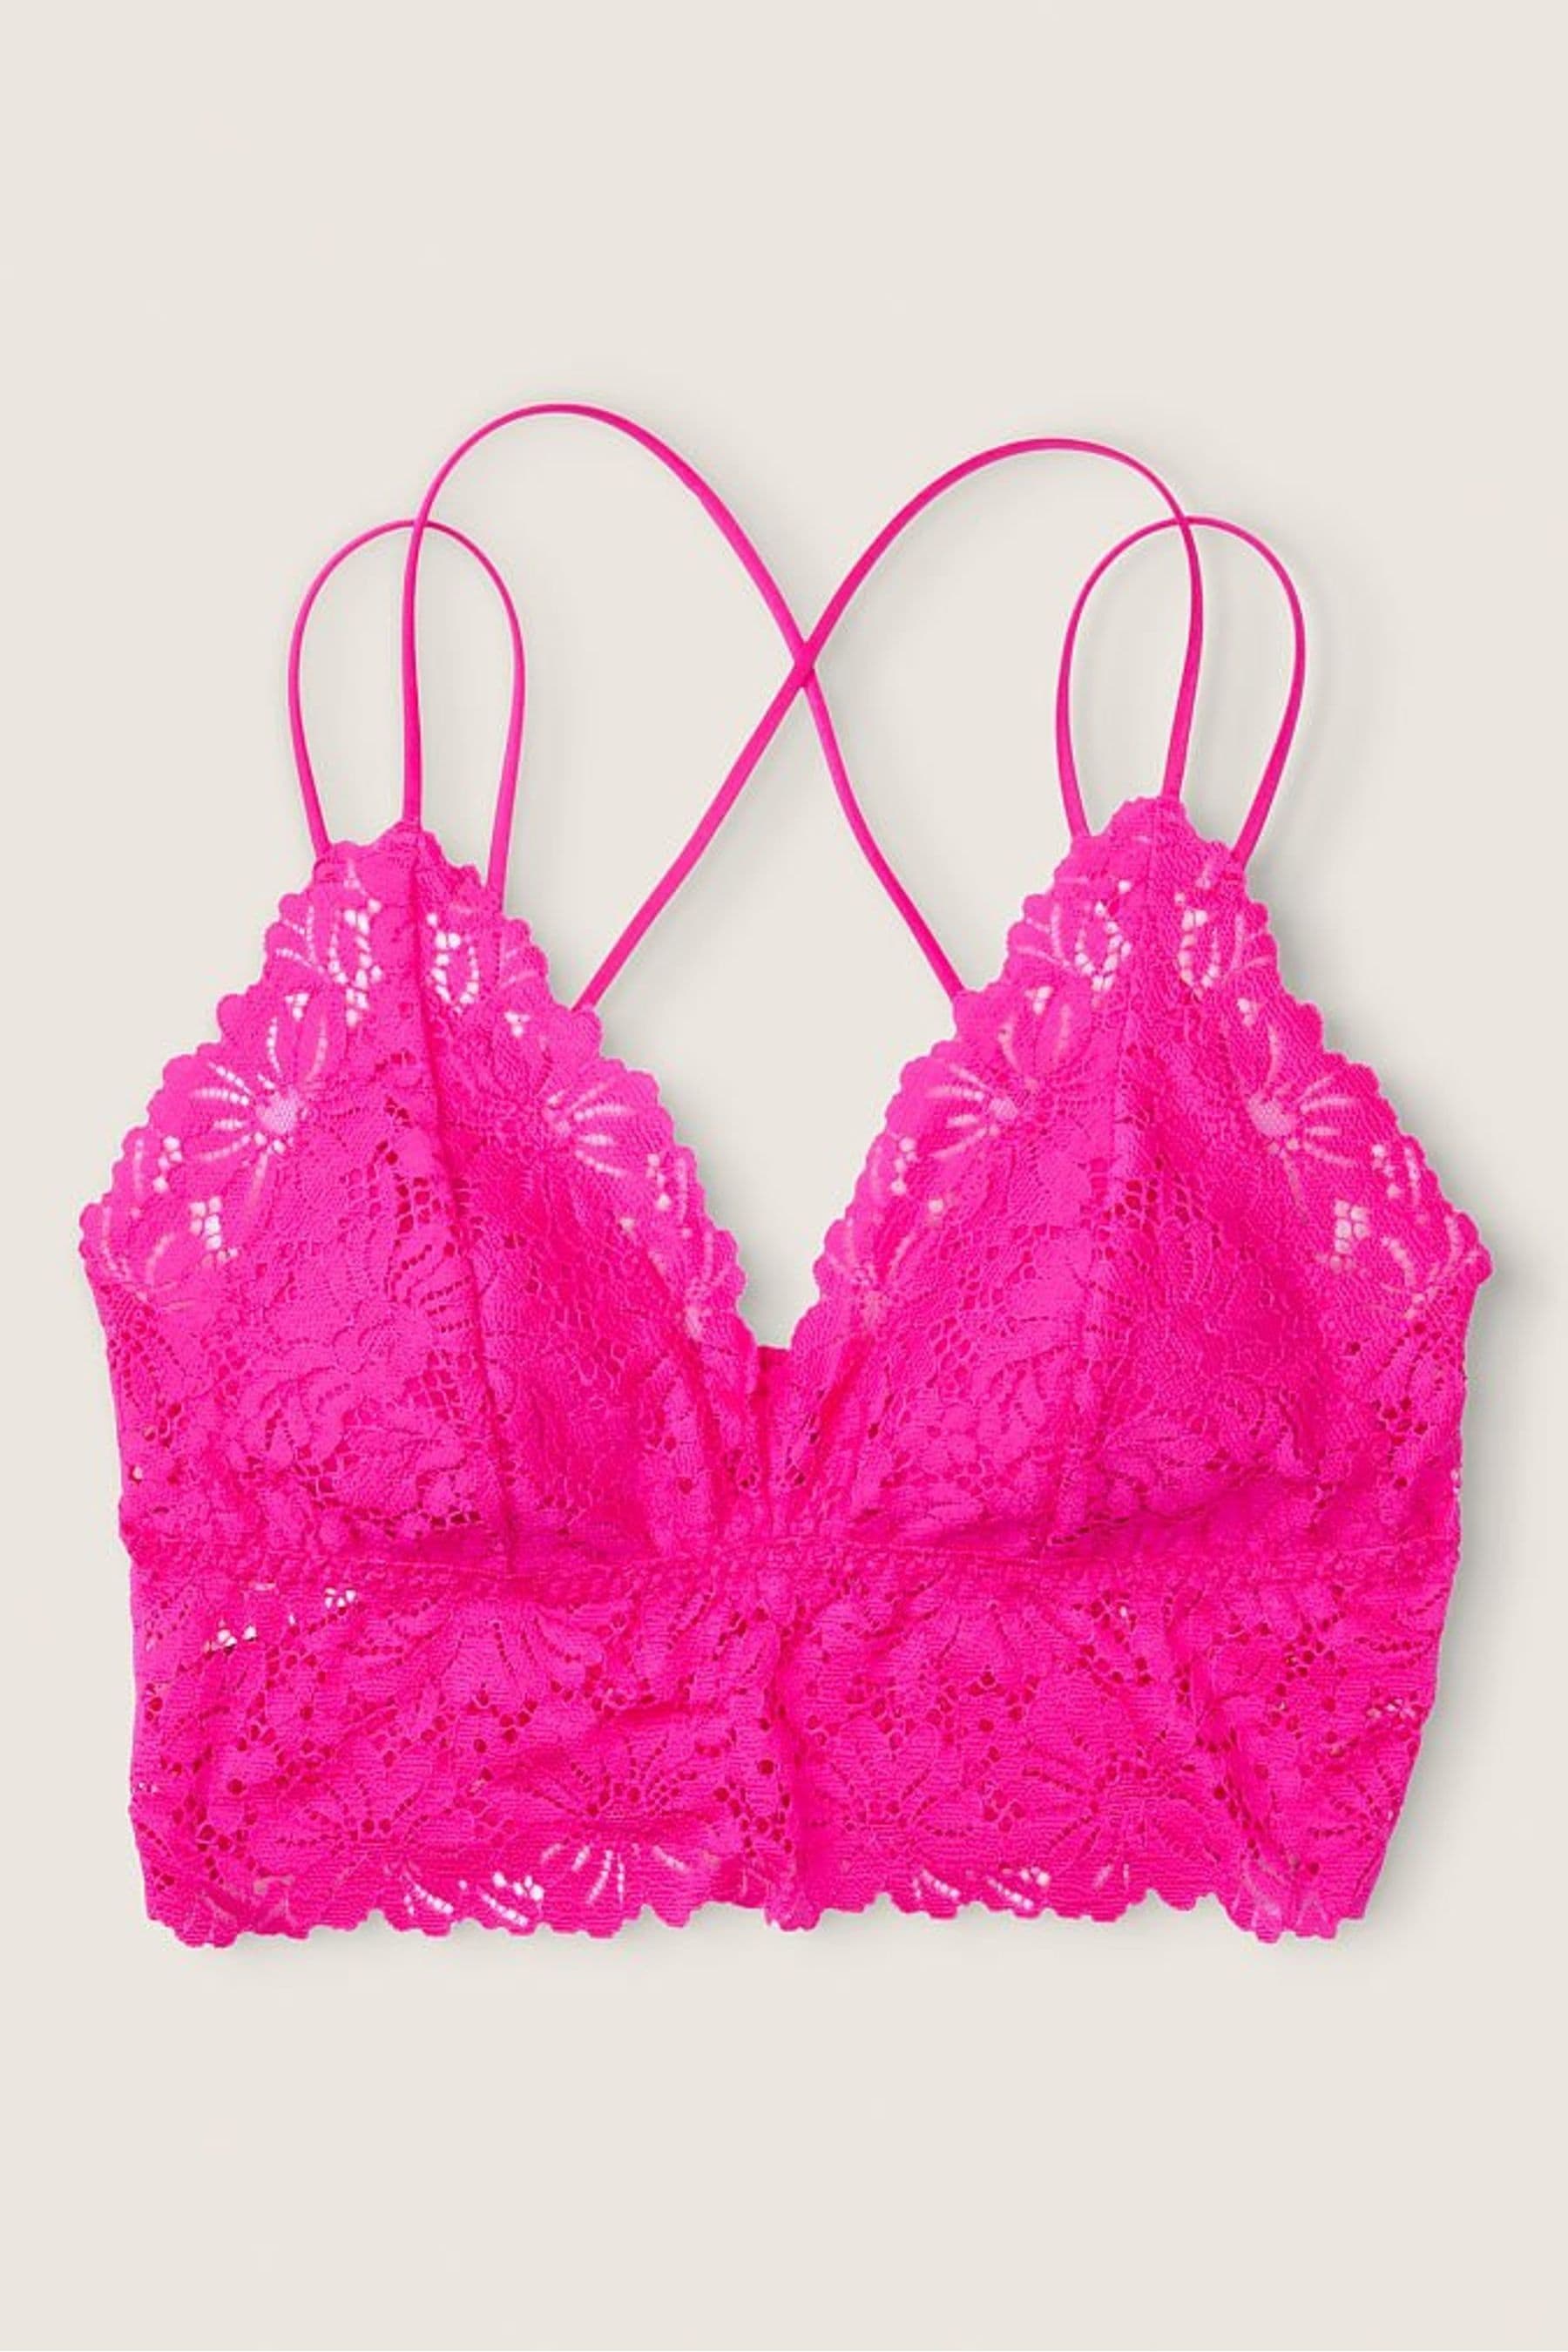 Buy Victorias Secret Pink Longline Lace Bralette From The Victorias Secret Uk Online Shop